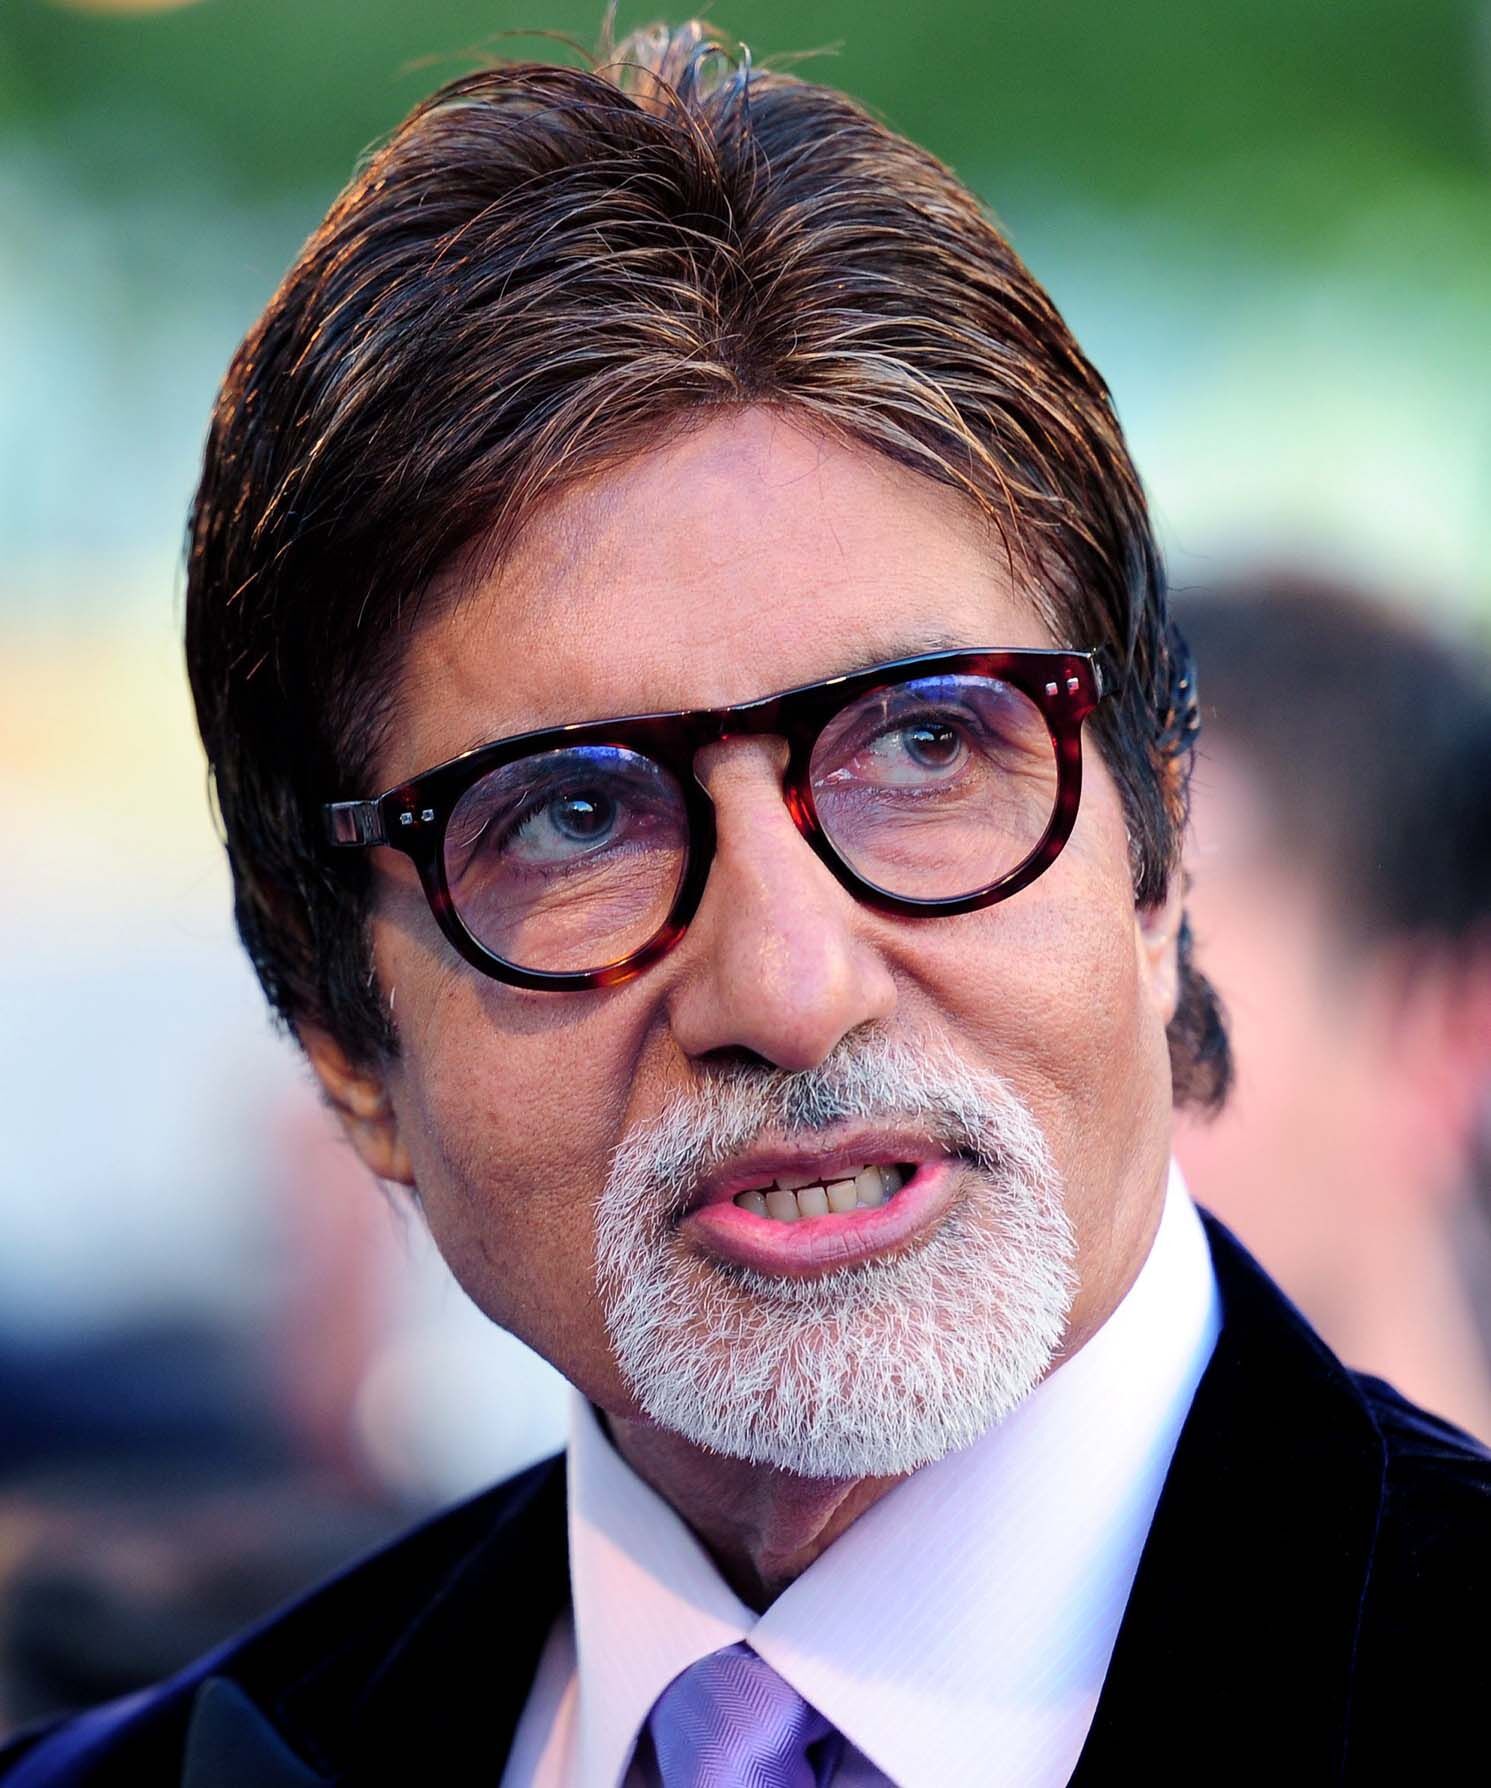 अमिताभ ने फिल्म दसवीं में निमरत कौर के अभिनय की तारीफ की